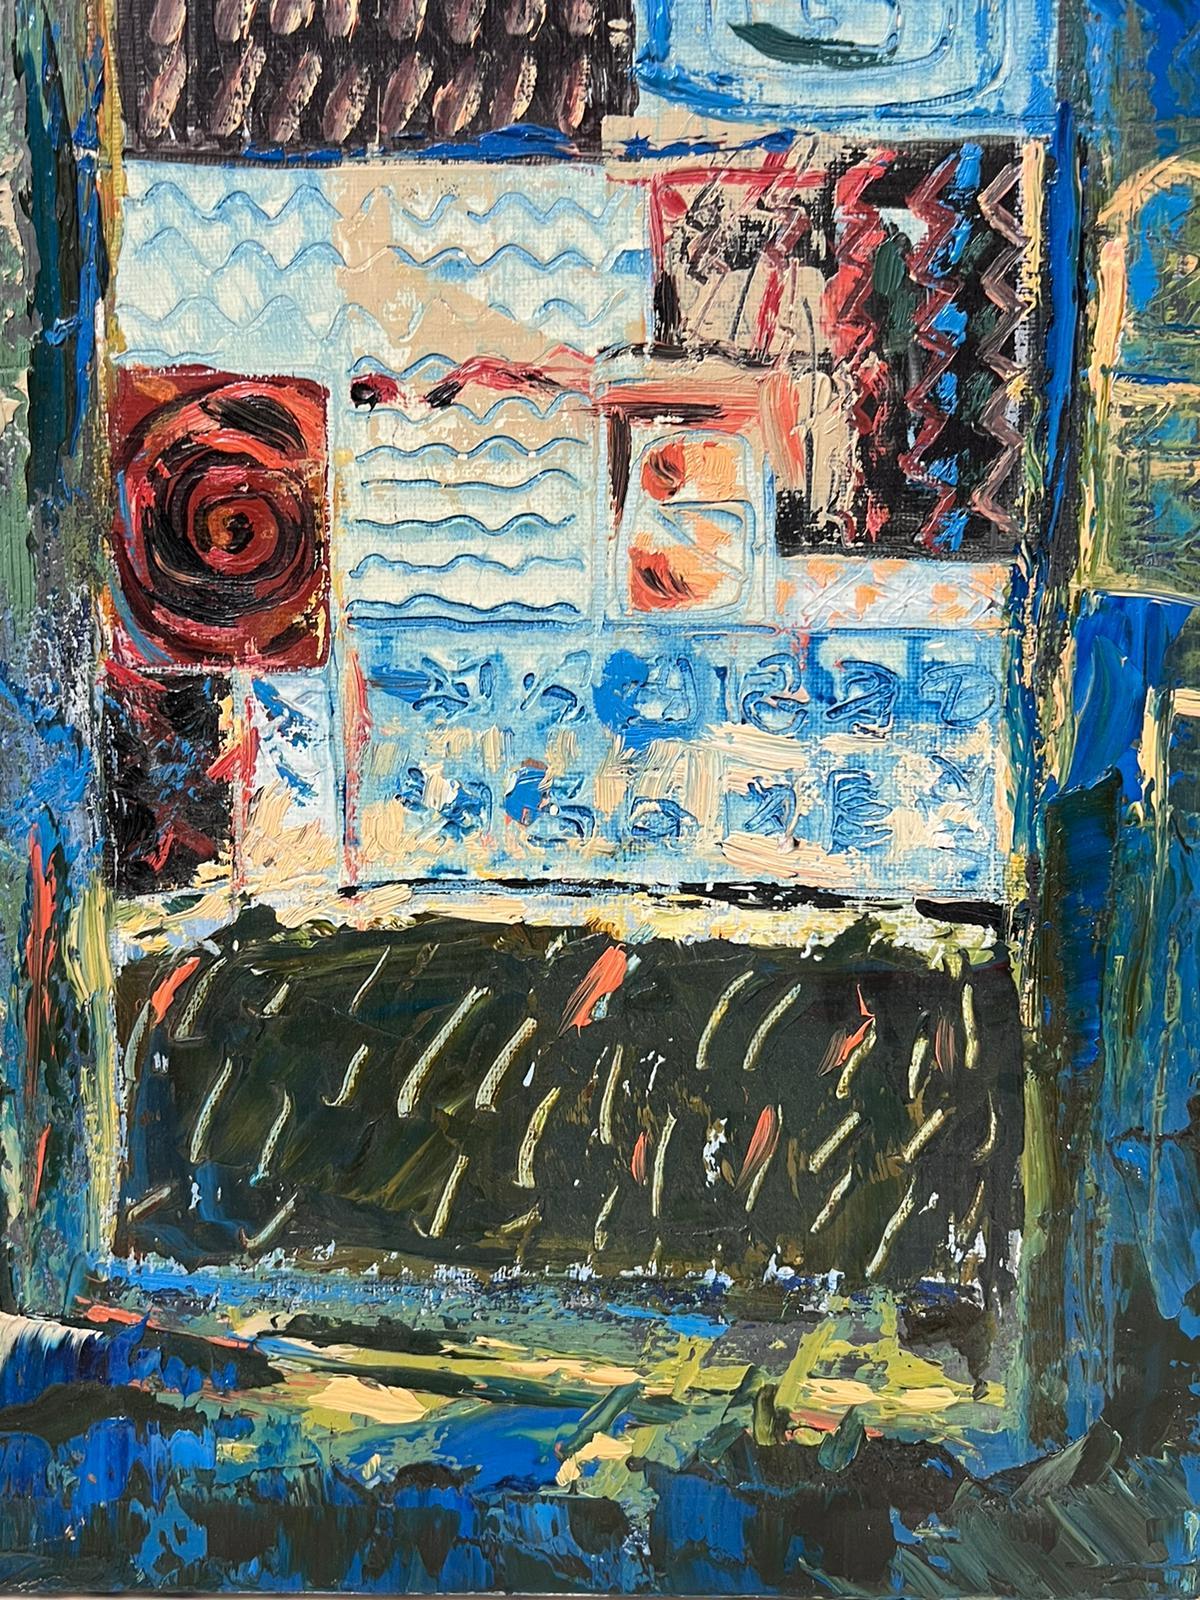 Composition expressionniste abstraite
par Jacques COULAIS (1955-2011)
peinture à l'huile sur toile
non encadré : 16 x 11 pouces
état : excellent
provenance : tous les tableaux de cet artiste que nous avons en vente proviennent du Studio de l'artiste